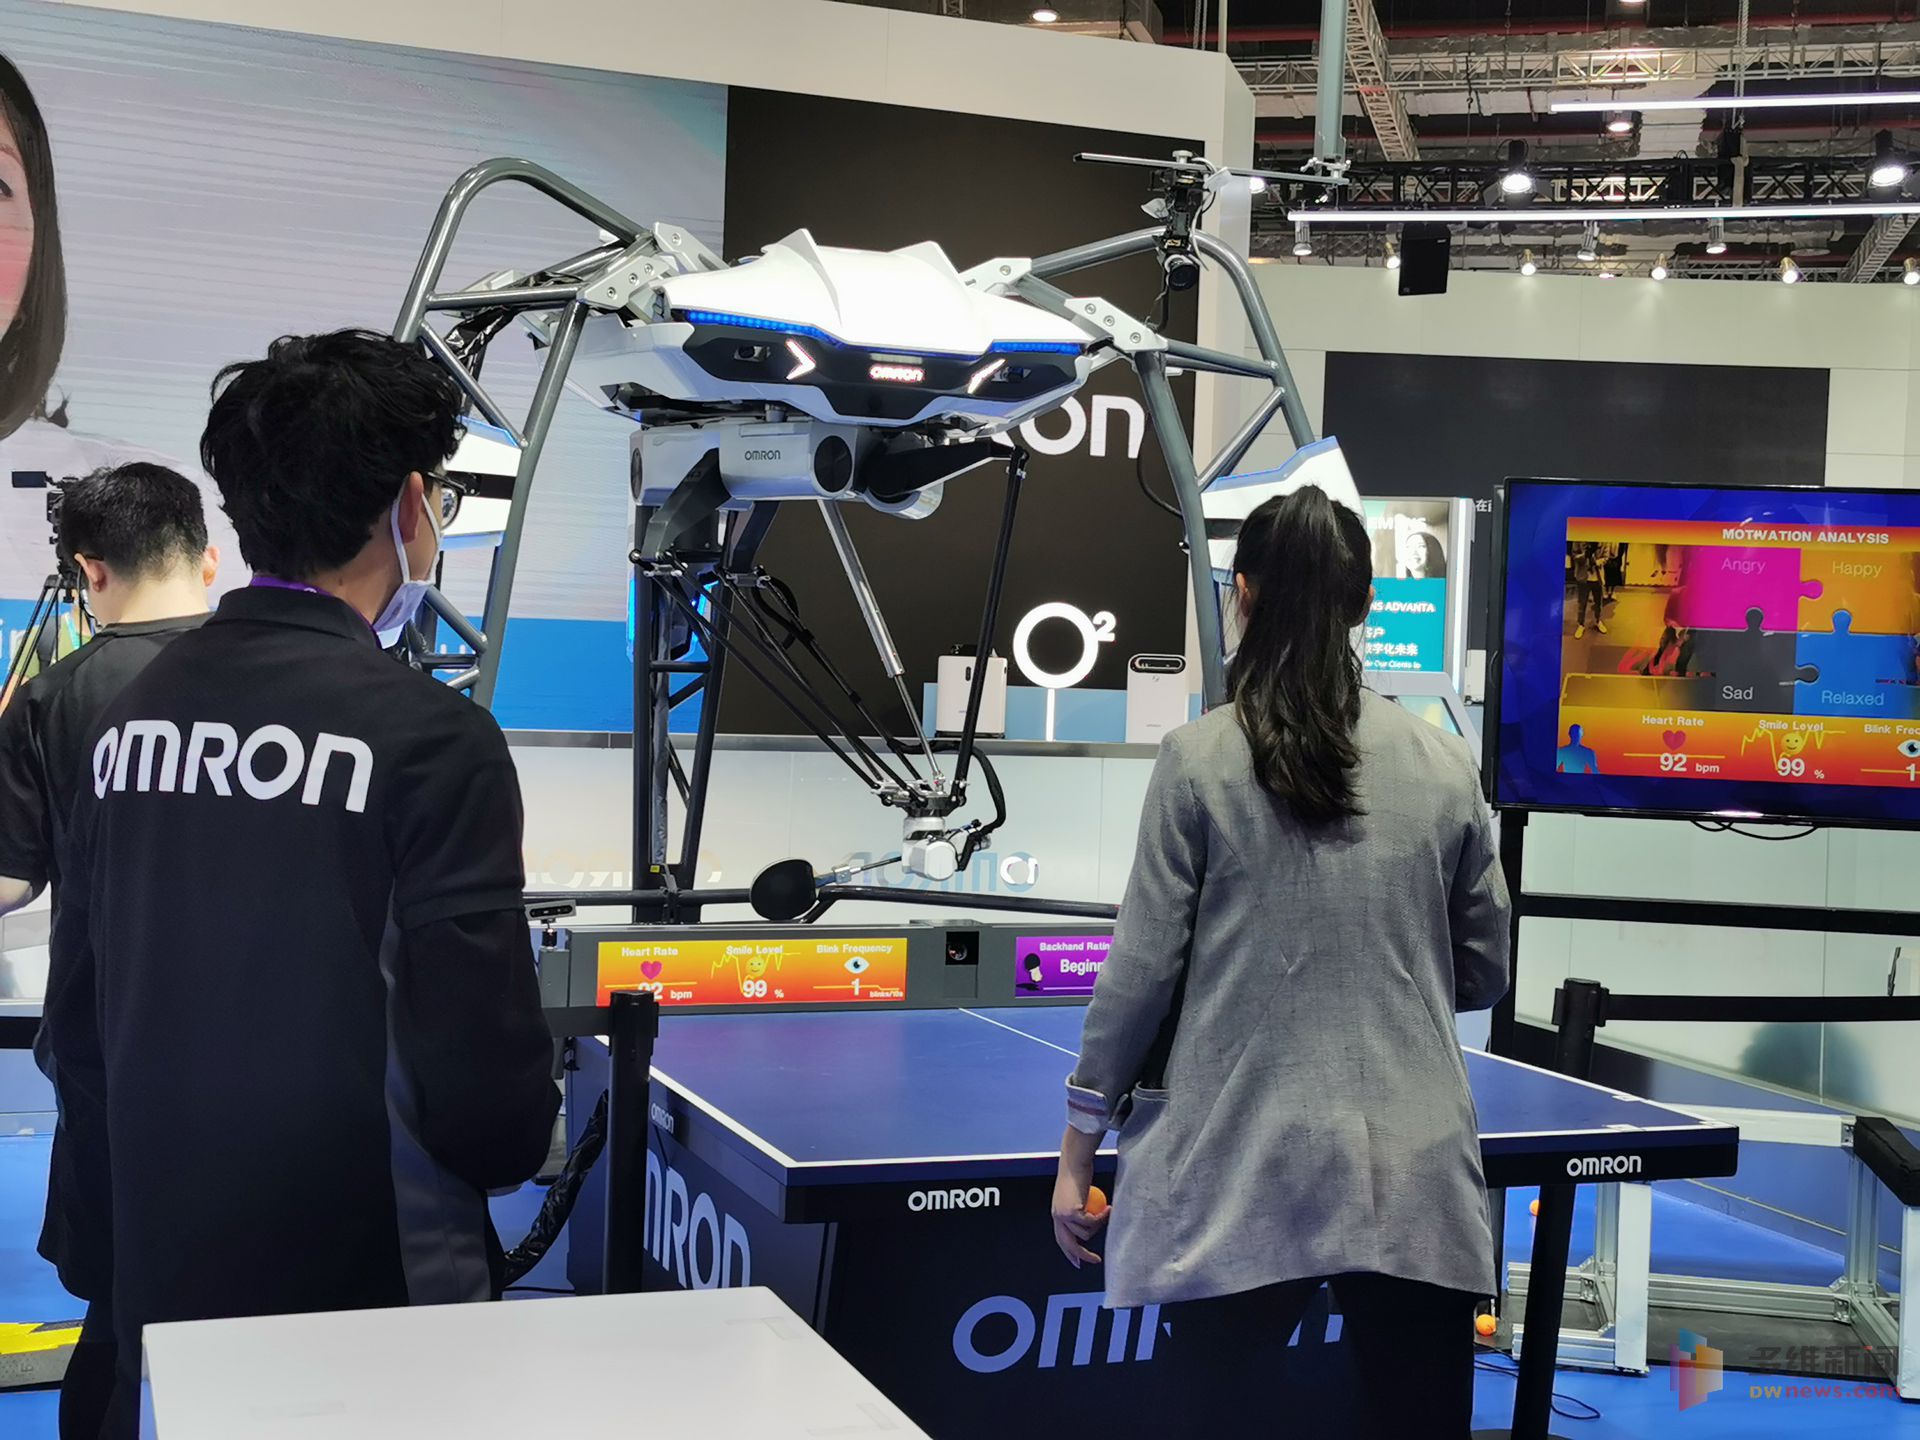 第三届进博会于11月5日至10日在国家会展中心（上海）举办。本届进博会商业企业展共设置了六大展区，展览面积超过上届规模。图为这款自动乒乓球机器人也很受欢迎，被称为“最会打乒乓球的机器人”。